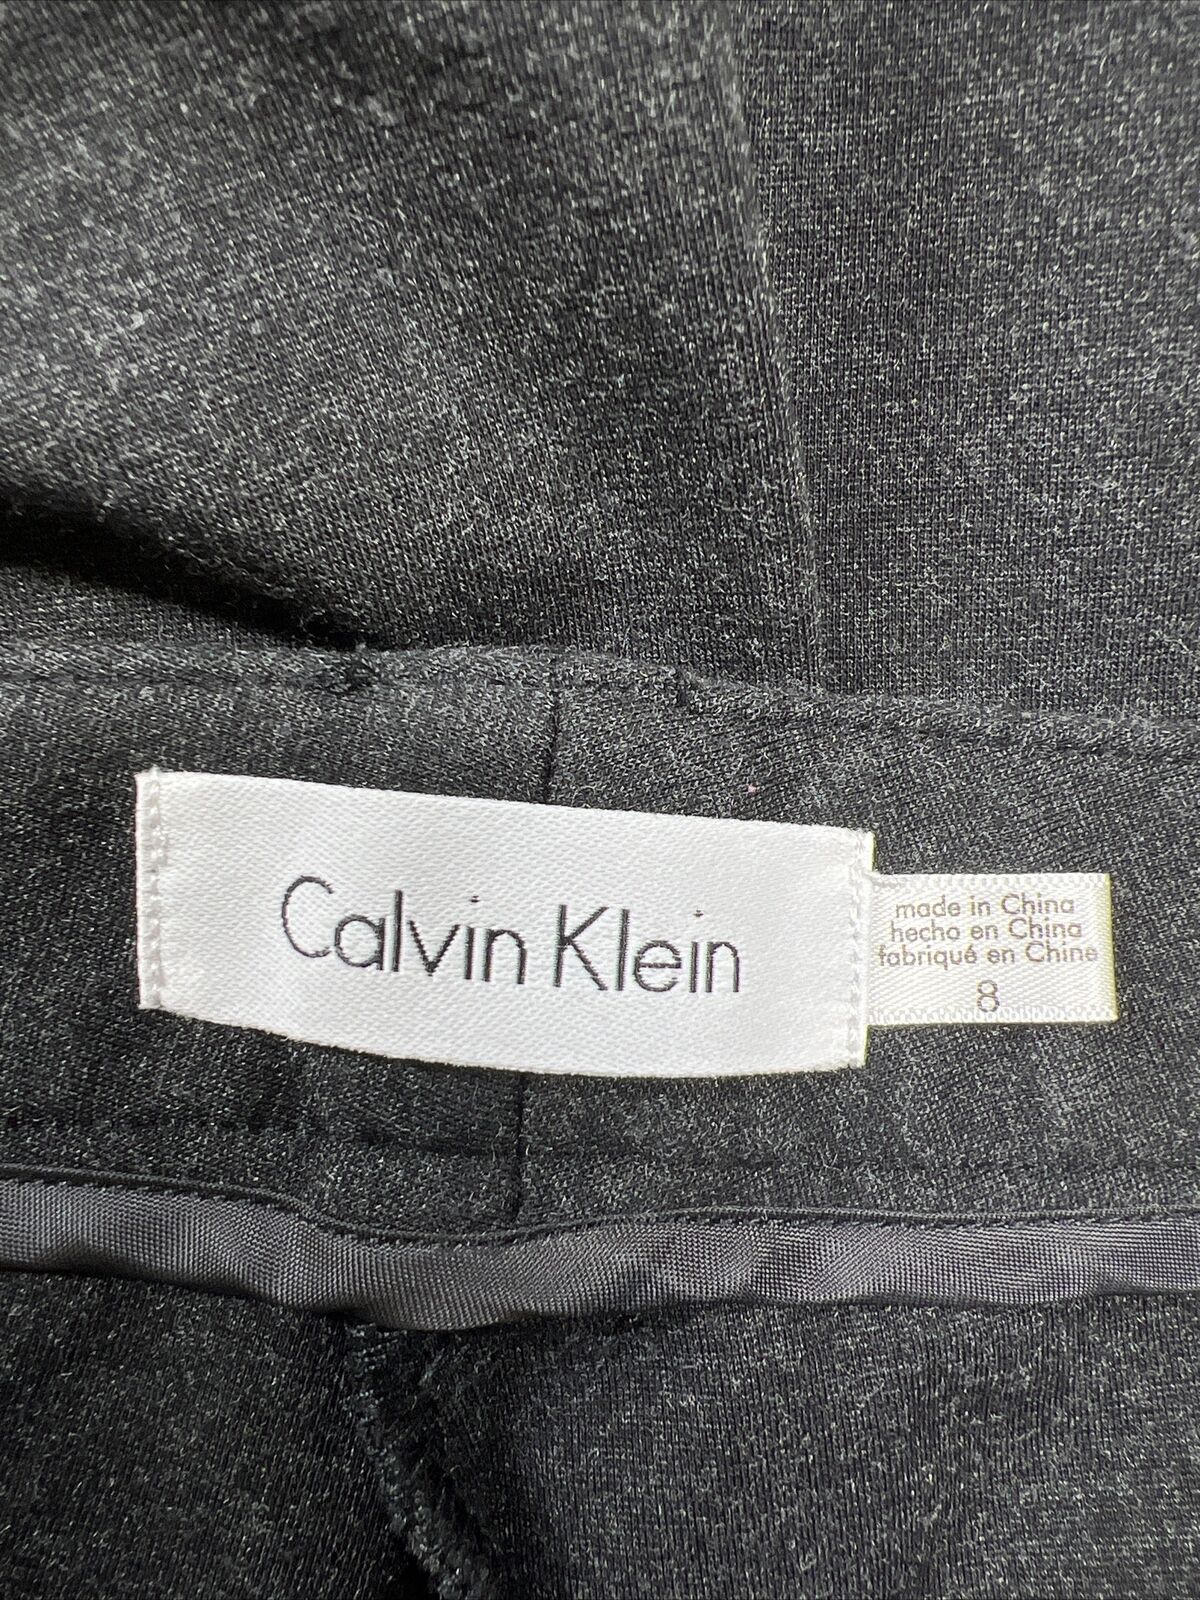 Calvin Klein Women's Gray Slim Fit Stretch Dress Pants - 8